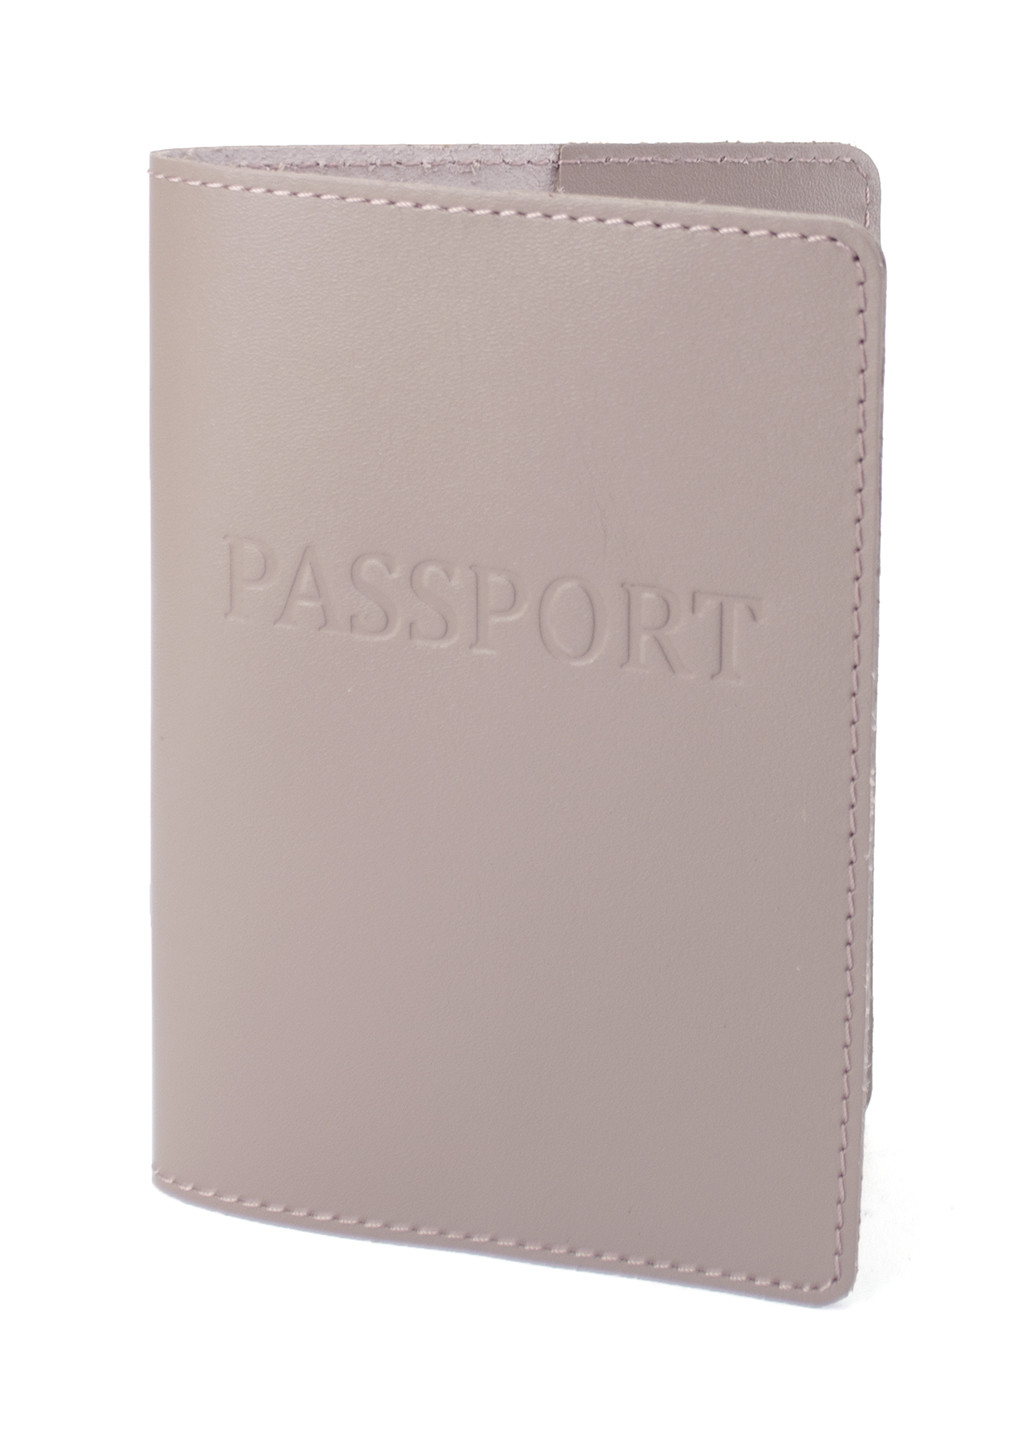 Подарочный набор женский №63 (нюдовый) обложка на документы + обложка на паспорт + ключница HandyCover (250603783)